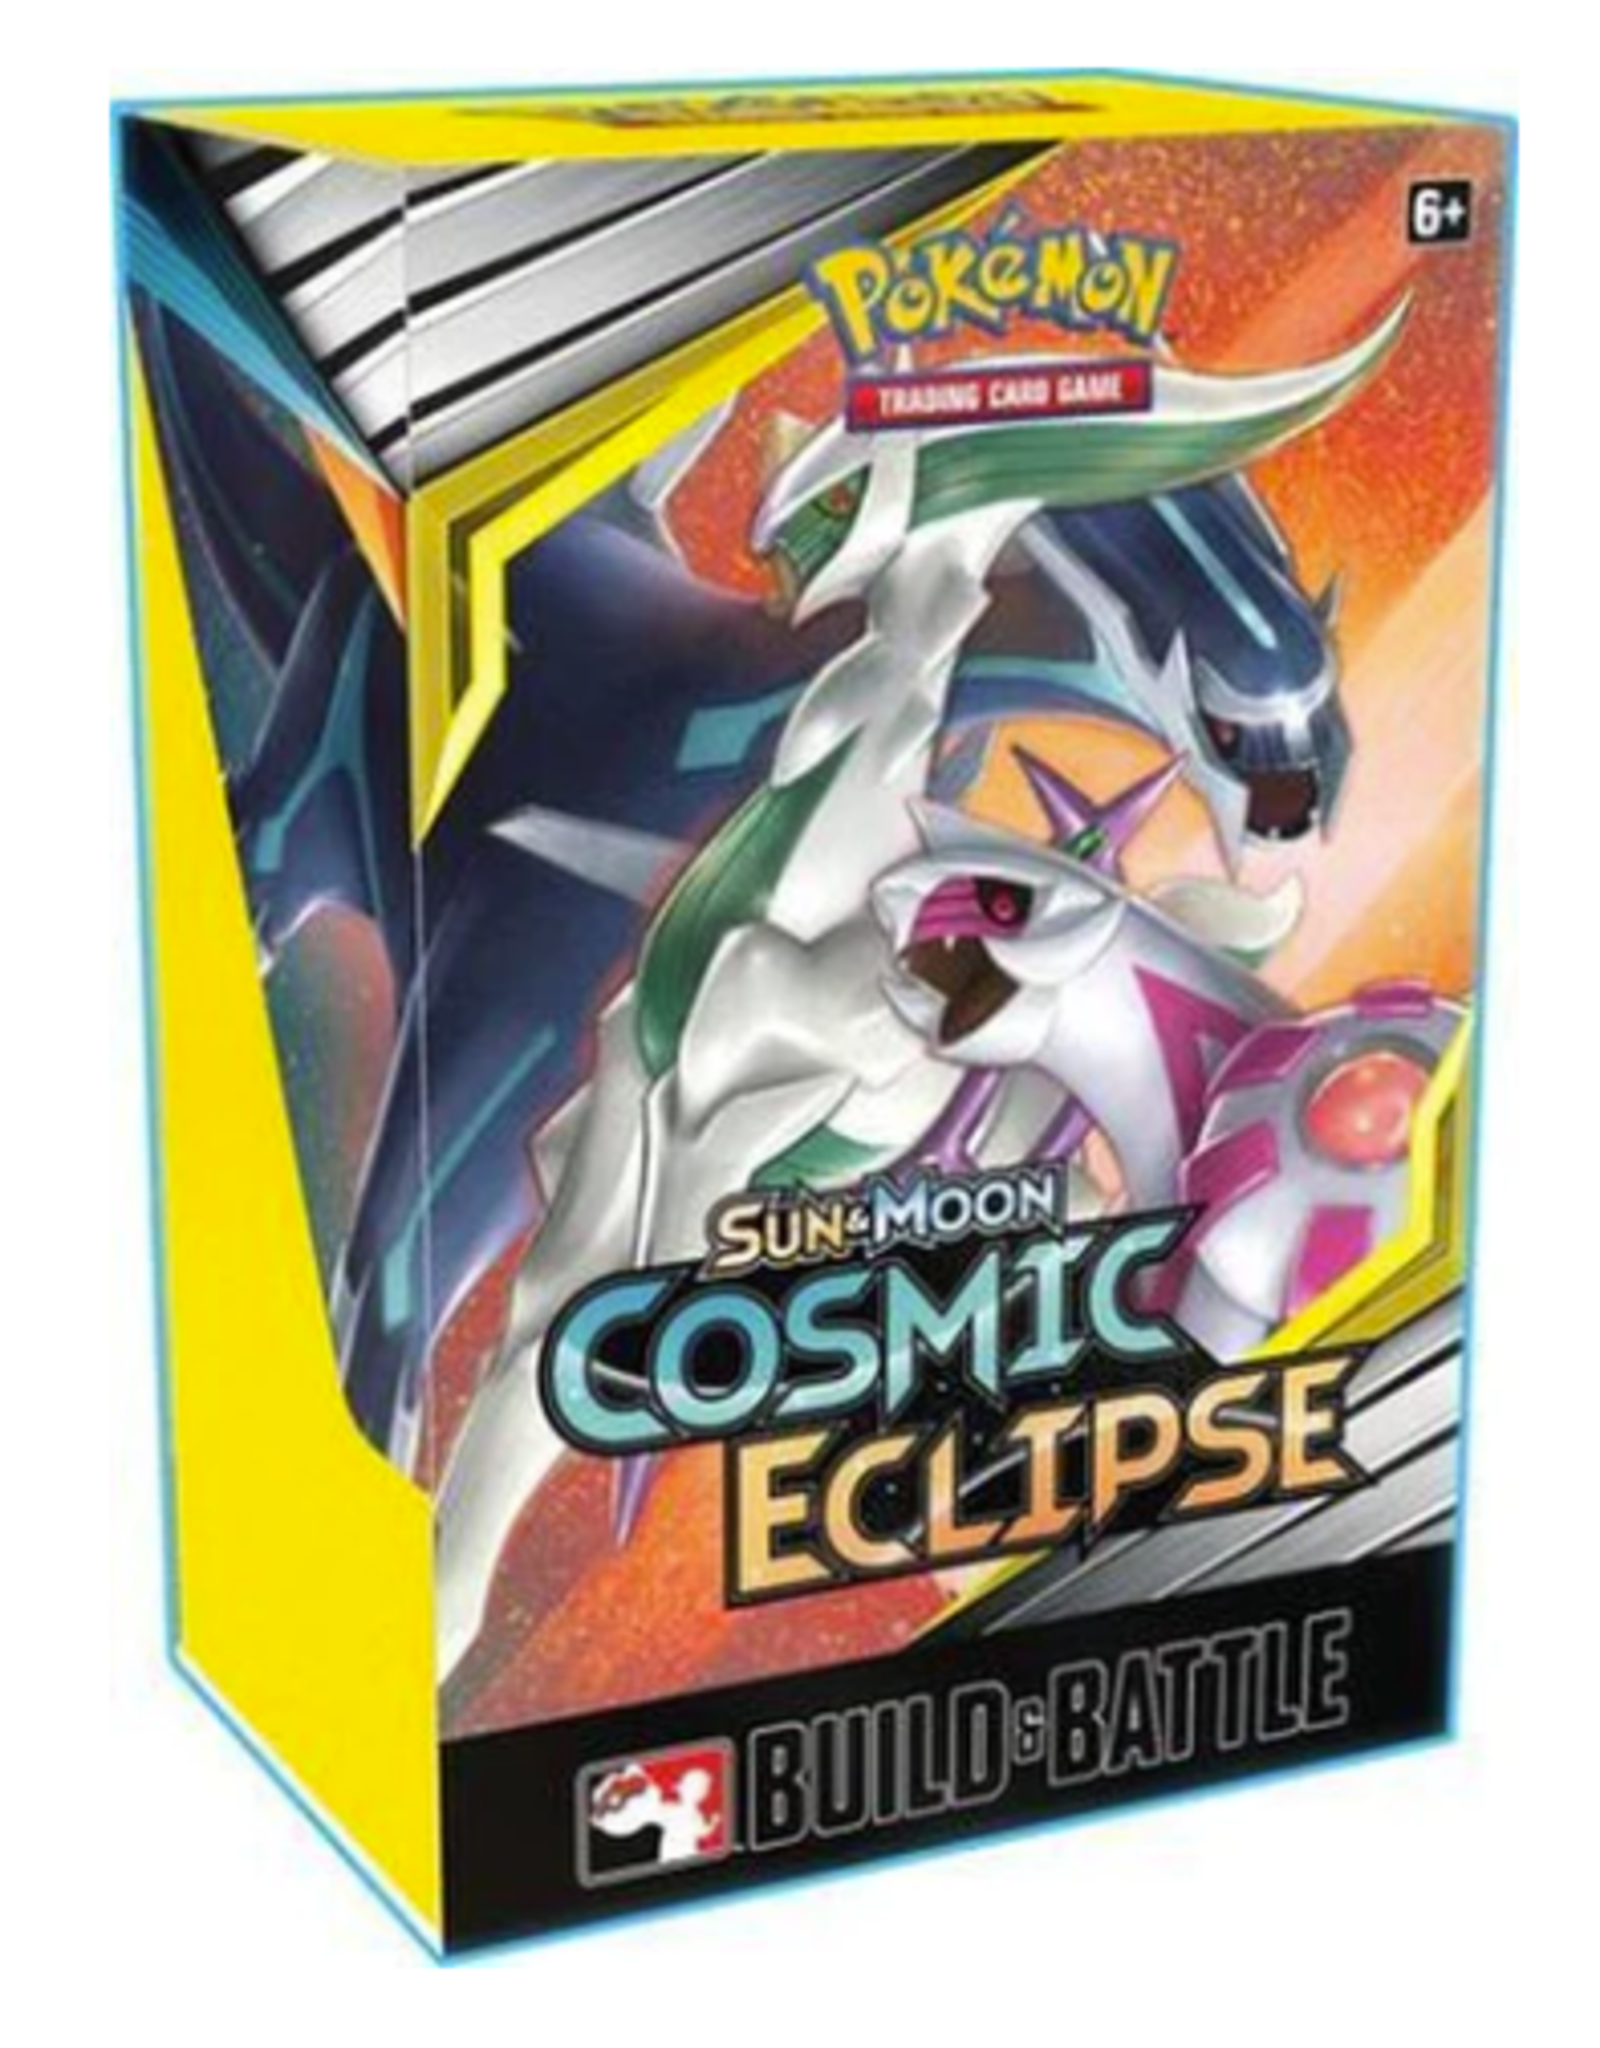 Cosmic Eclipse Build & Battle Kit